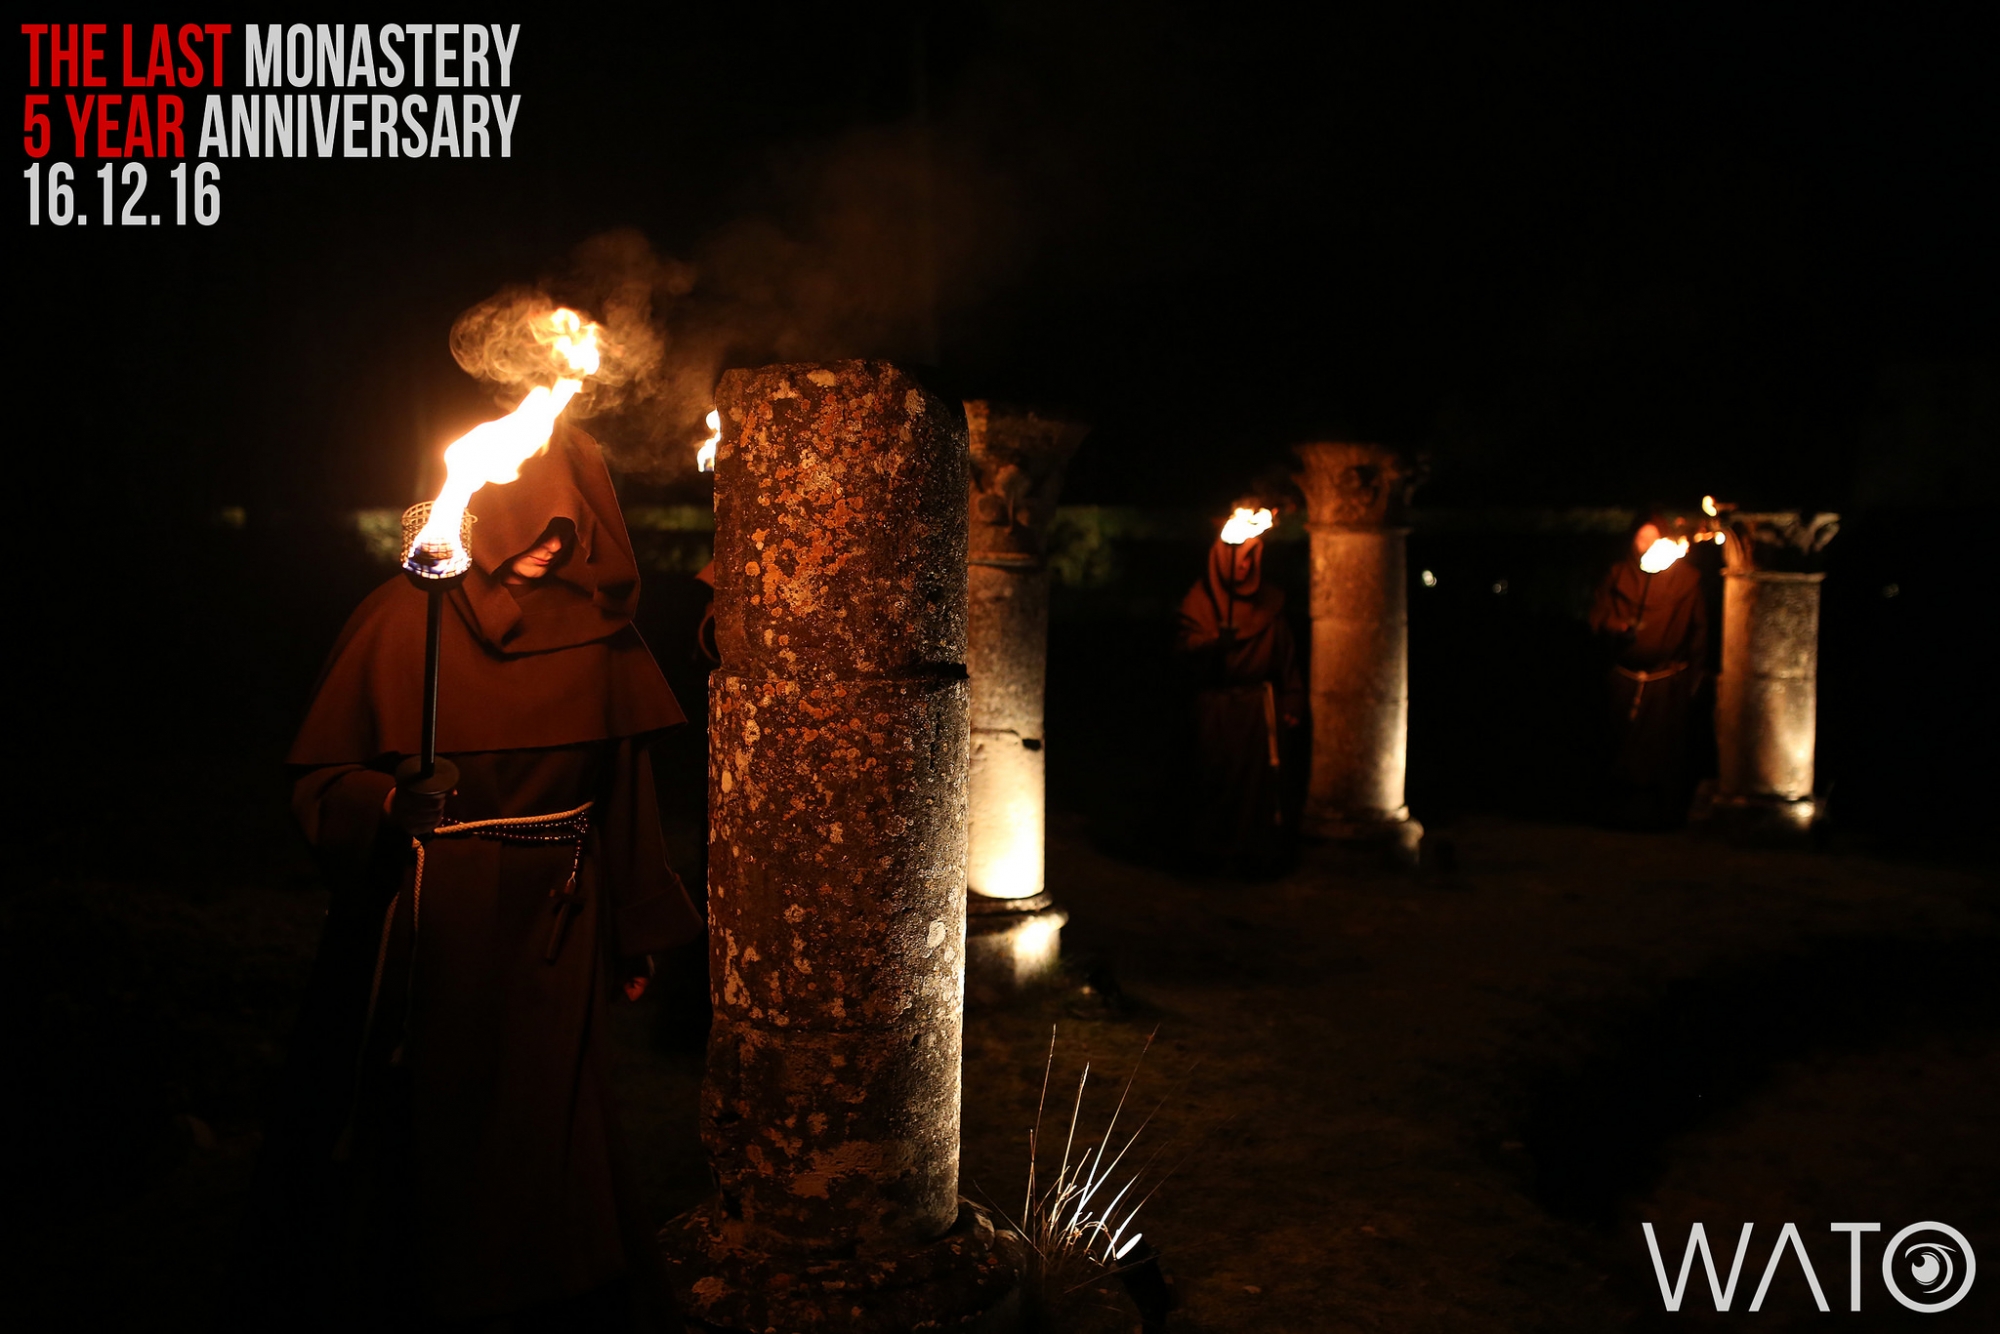 The Last Monastery, vendredi 16 décembre 2016, de 19h à 1h dans un lieu secret - Photo 7